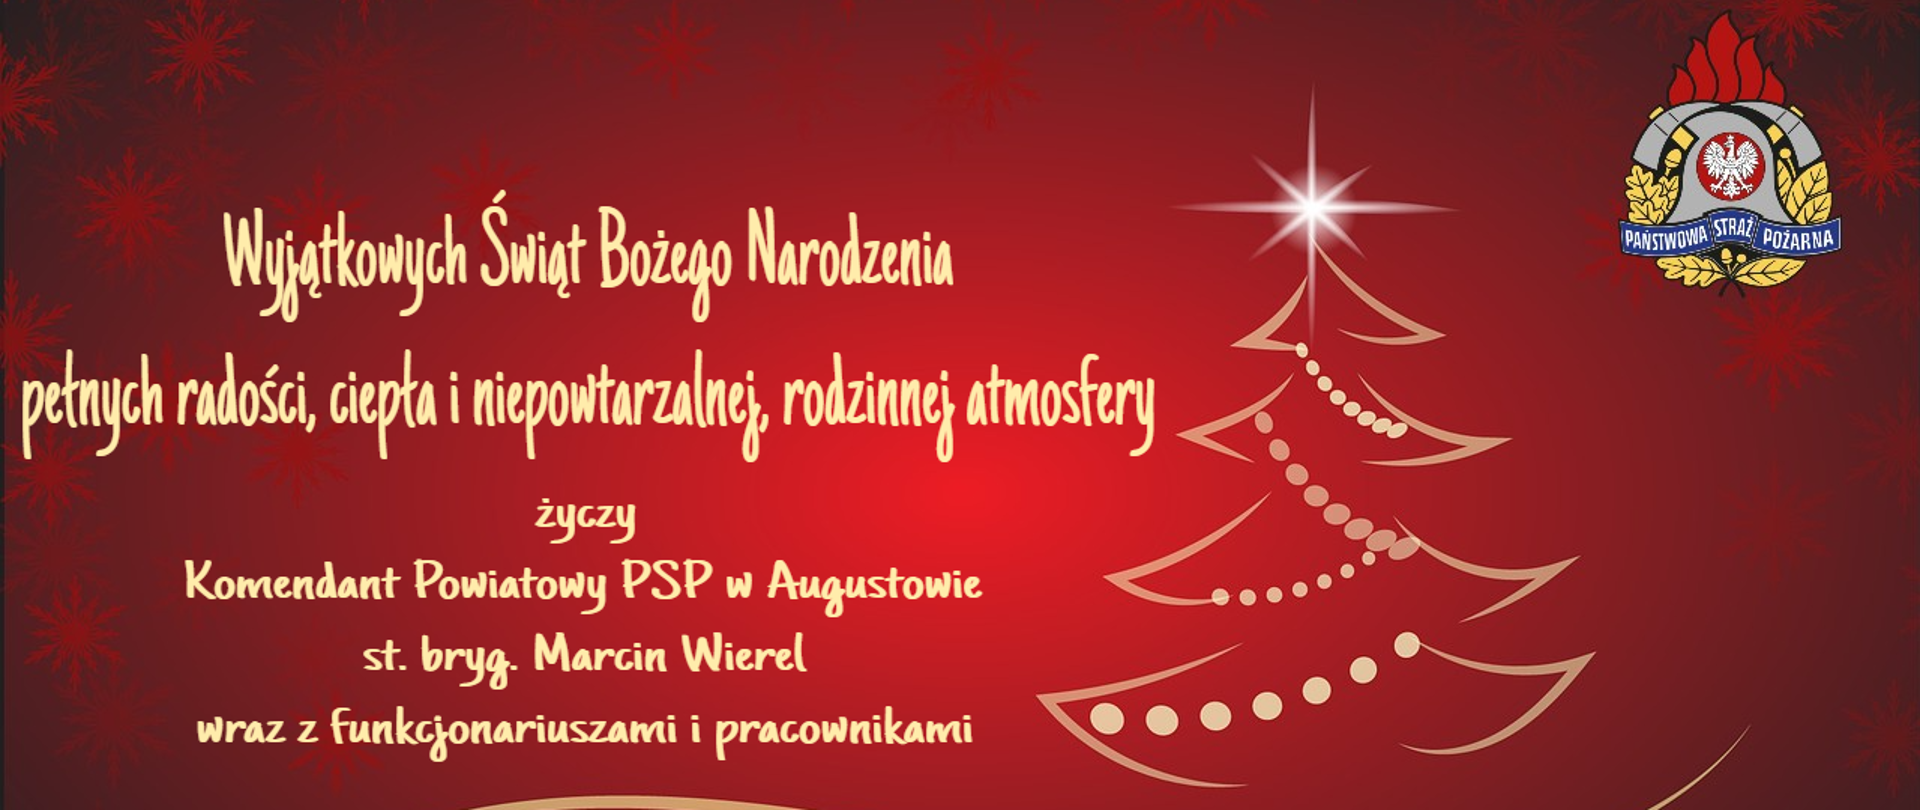 Życzenia świąteczne od KP PSP w Augustowie